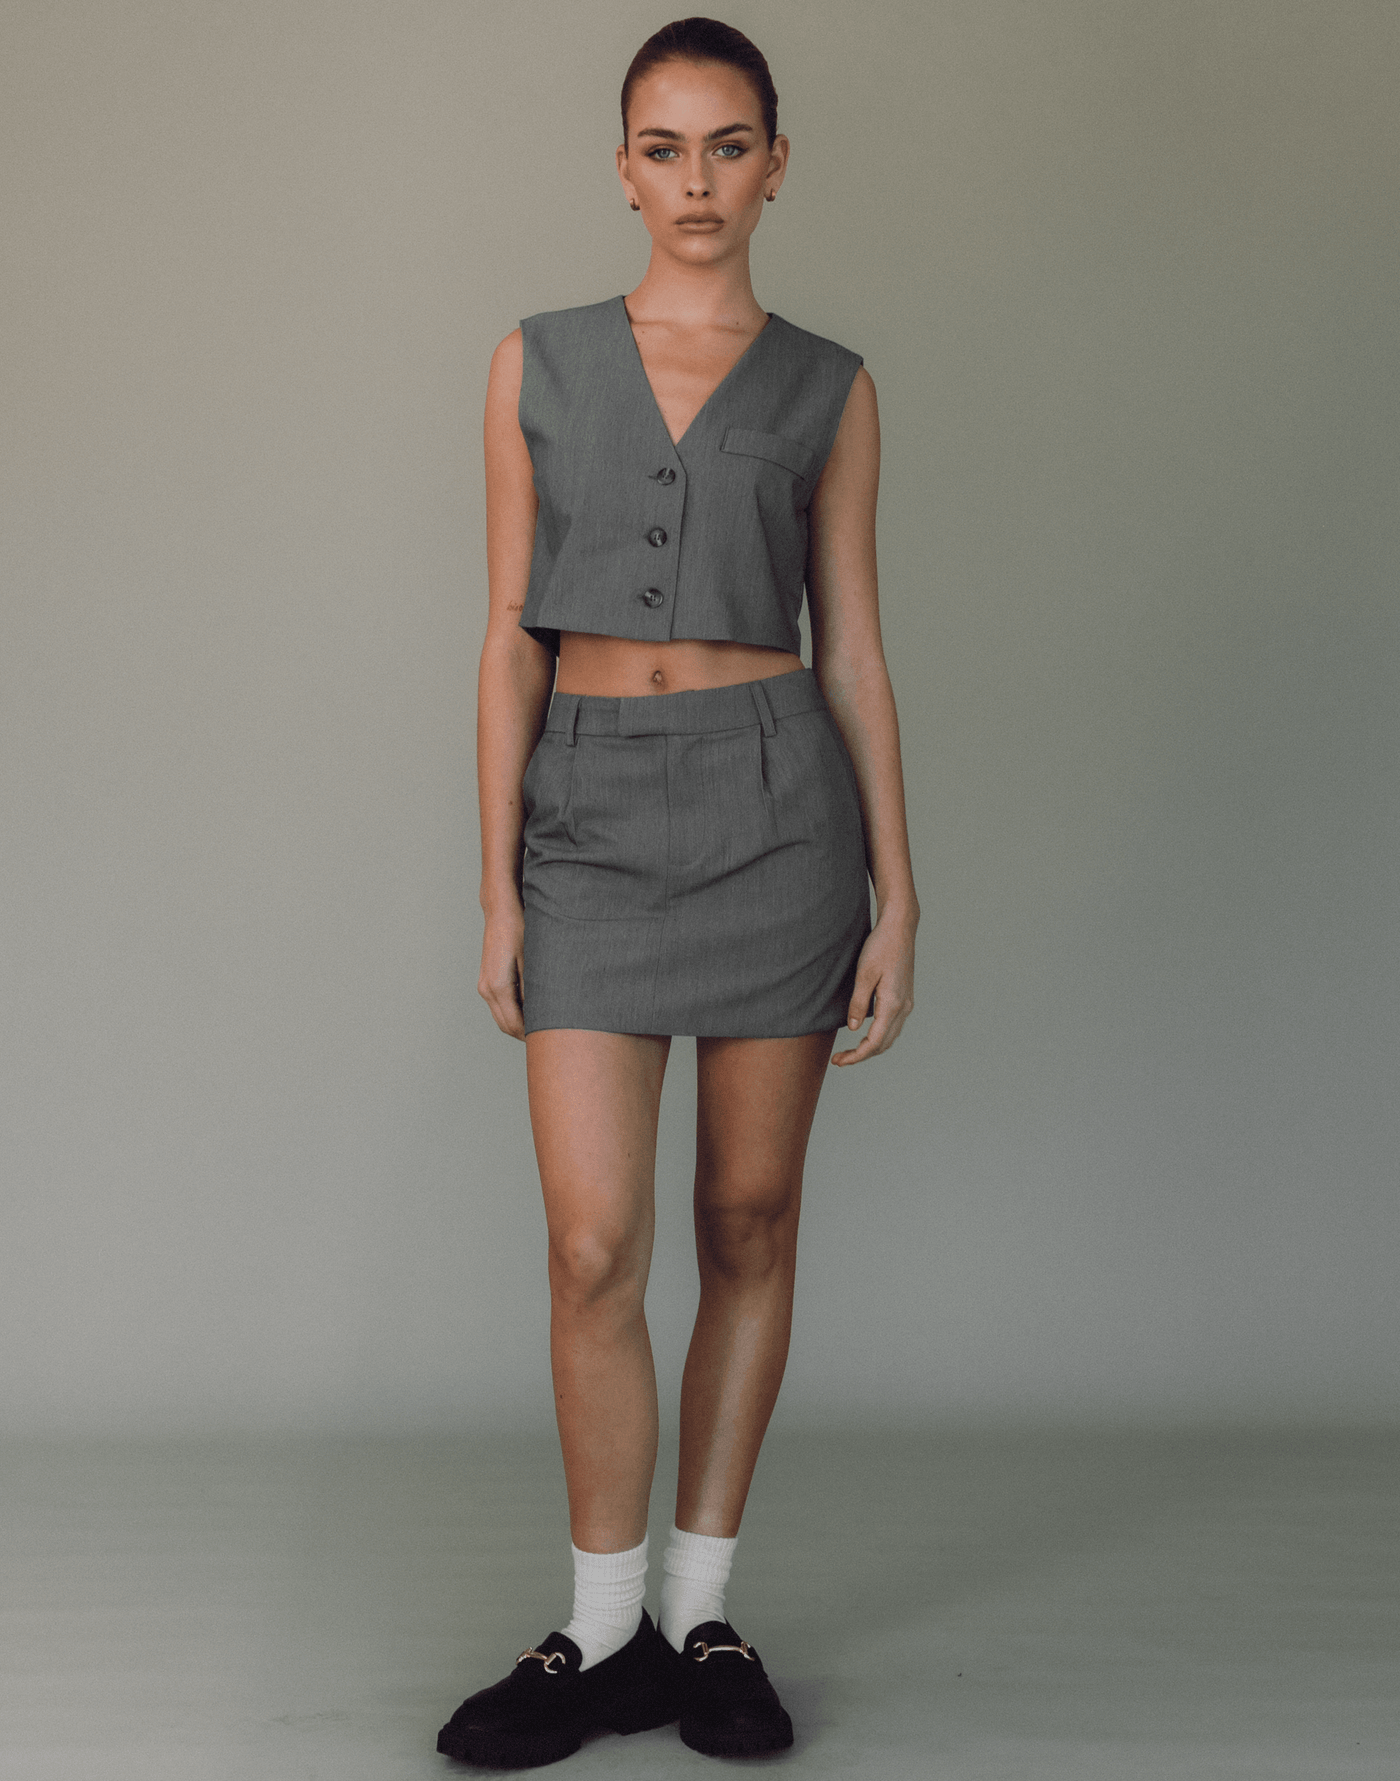 Sidewalk Mini Skirt (Grey) - Tailored Mini Skirt - Women's Skirt - Charcoal Clothing